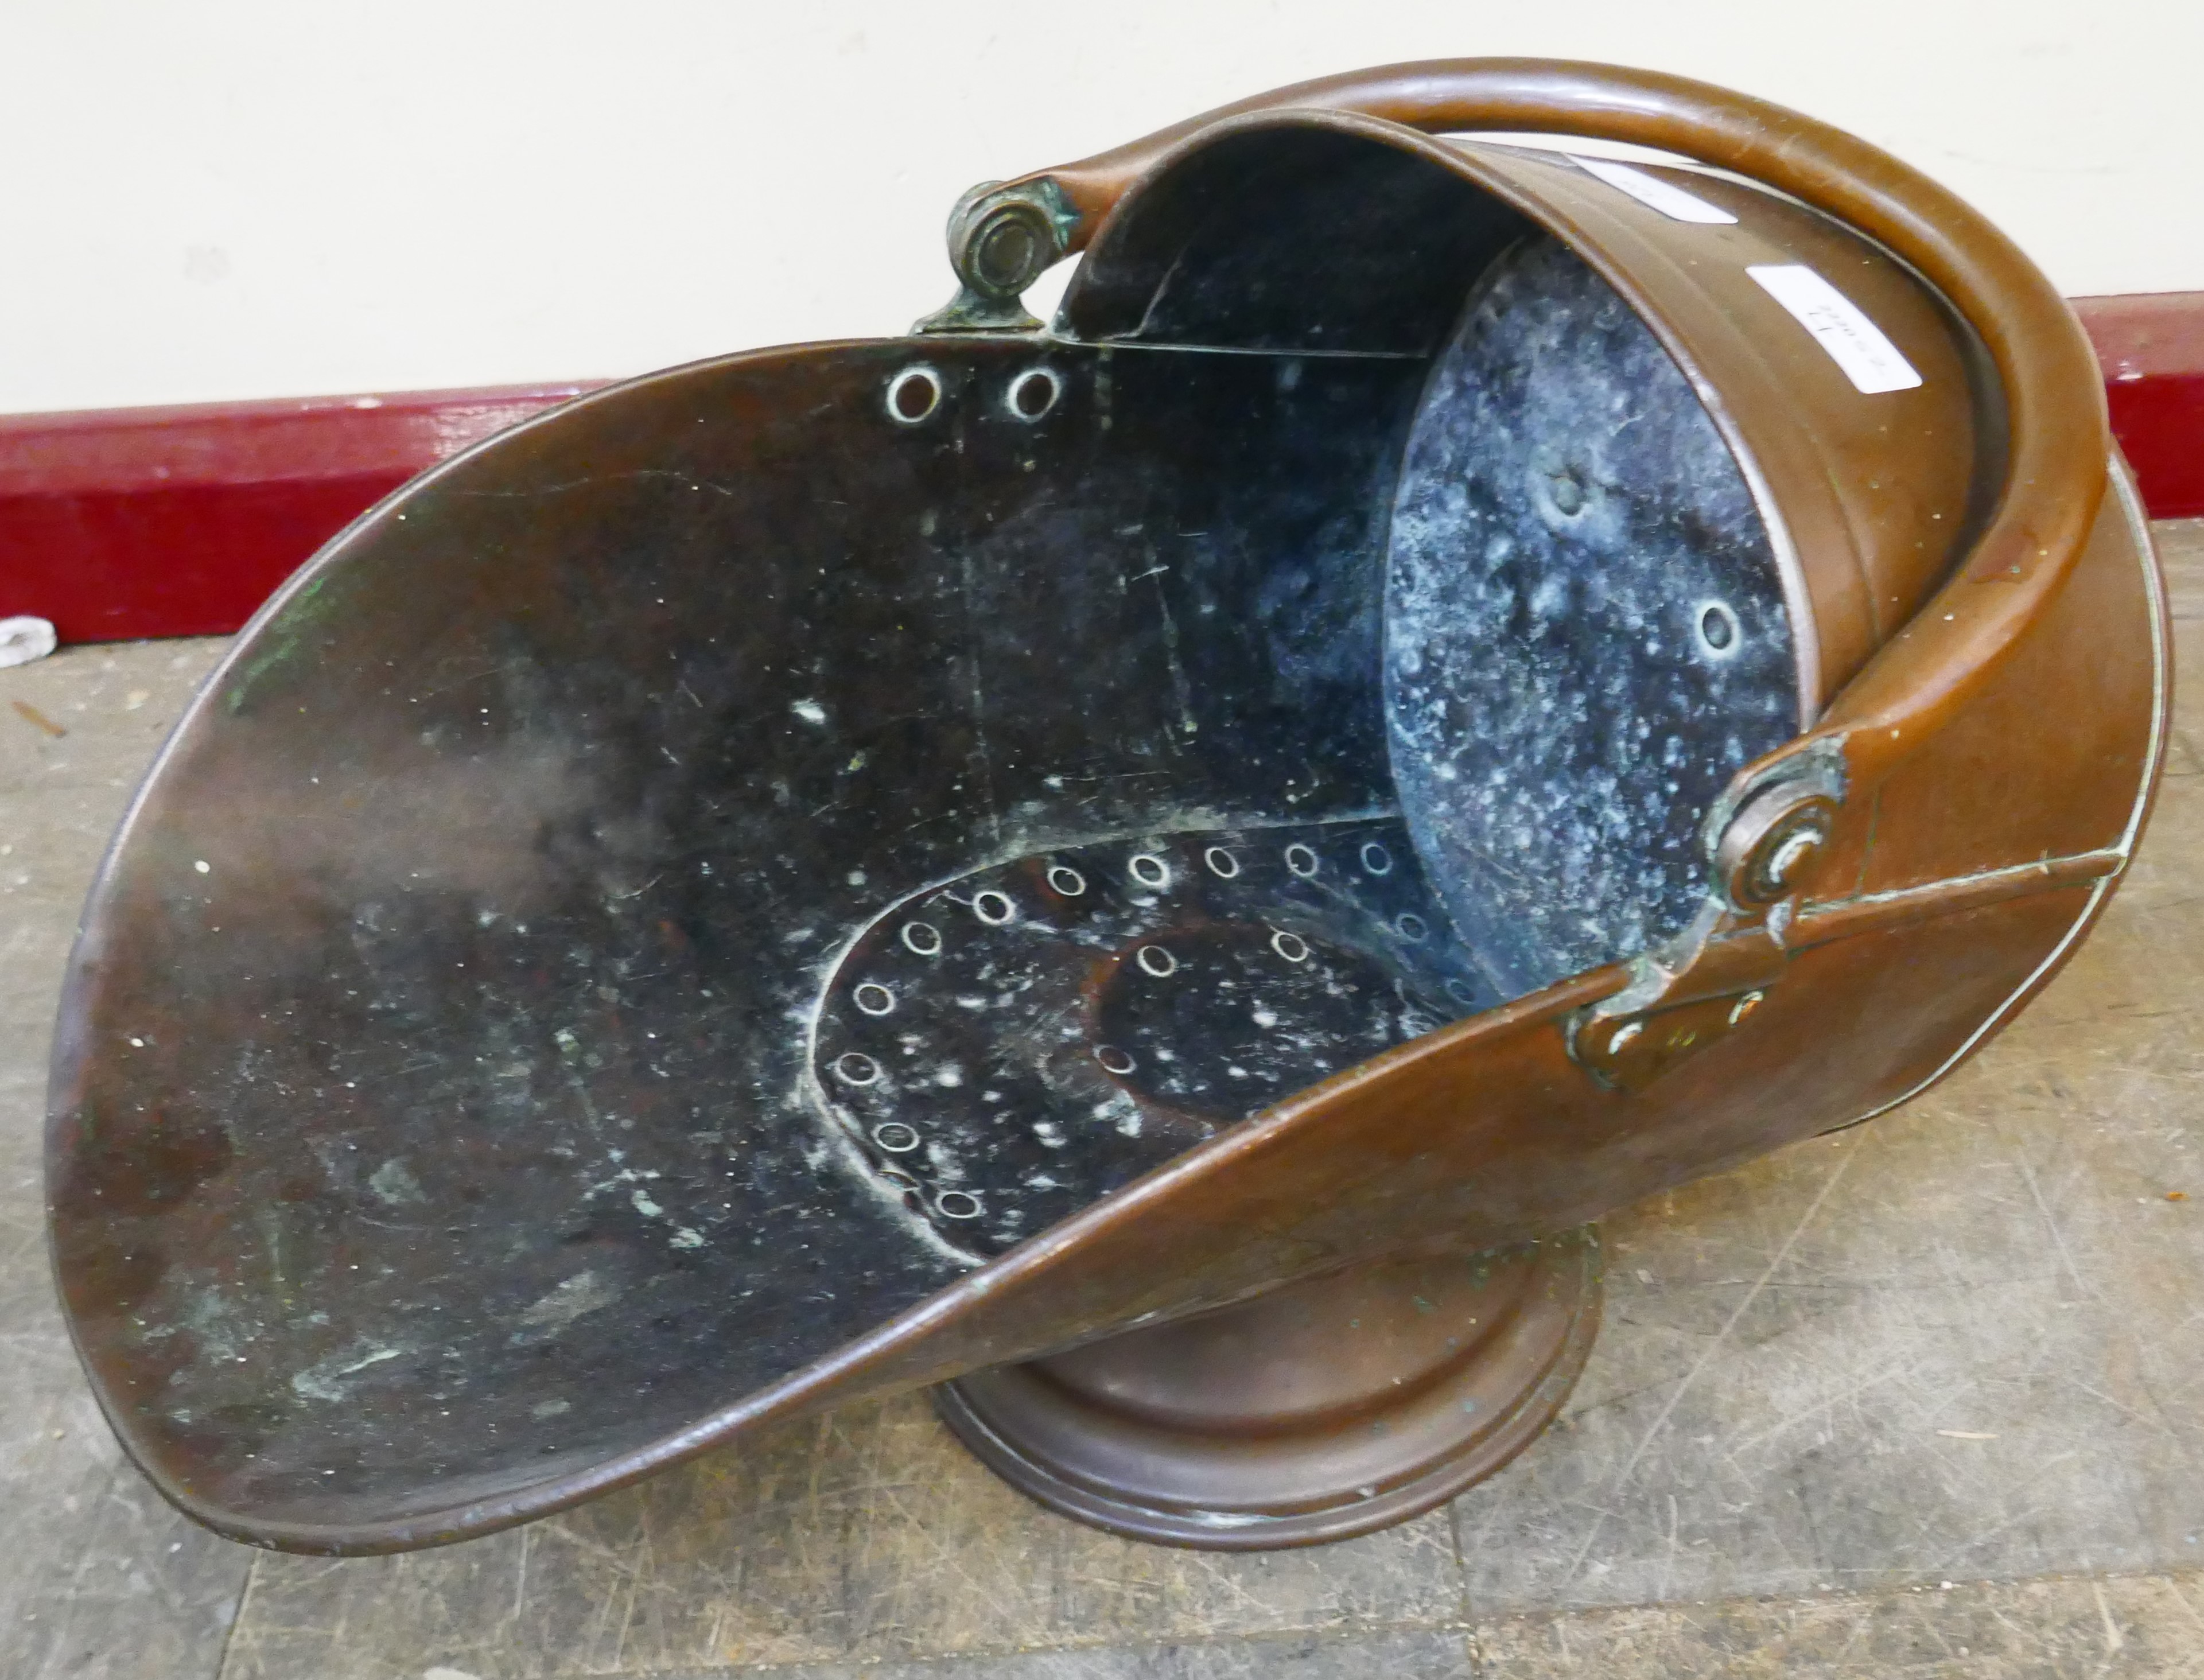 A Victorian copper coal scuttle